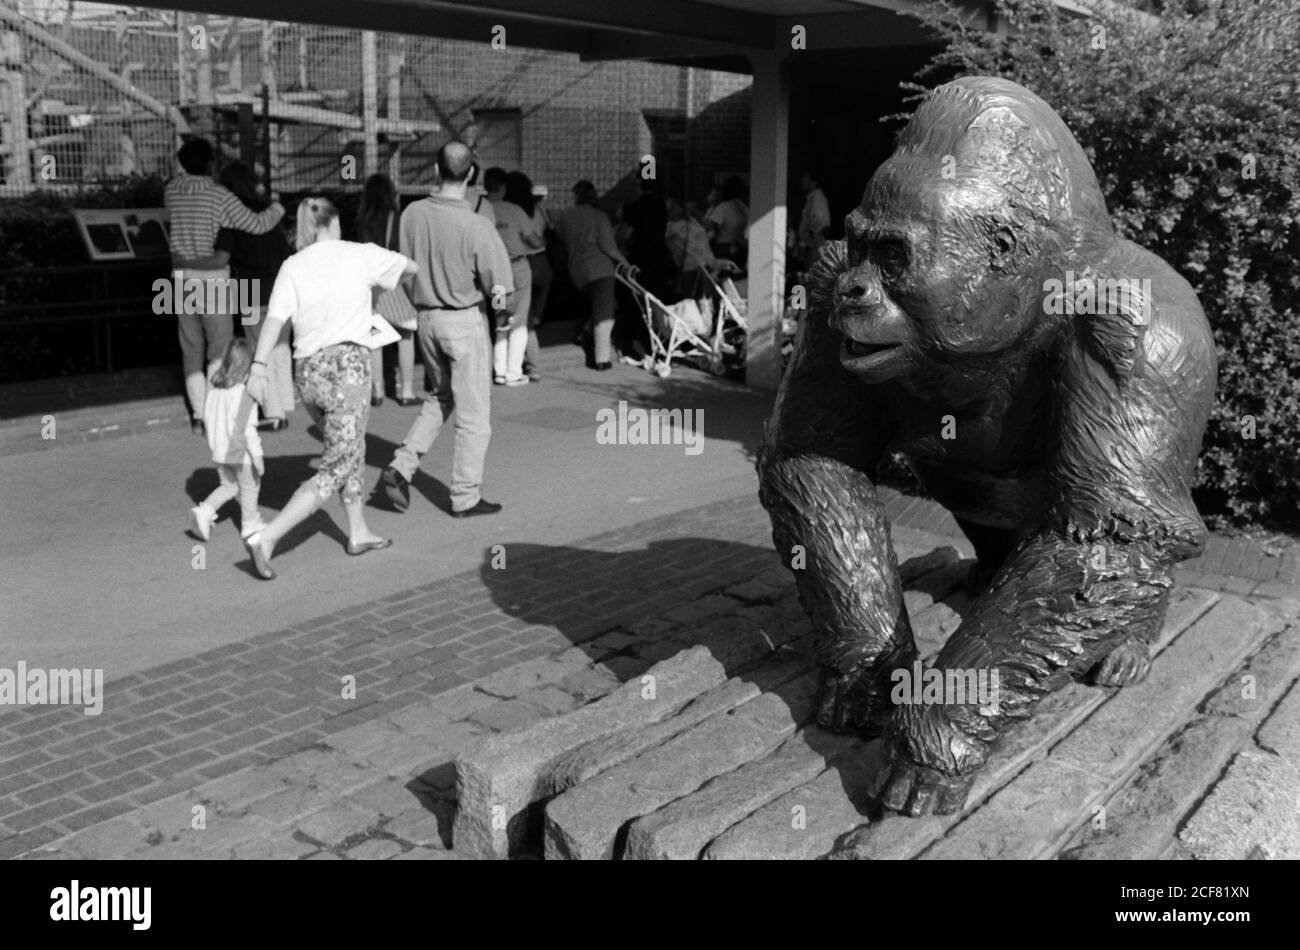 Statua di Guy the Gorilla all'ingresso dello zoo di Londra e della Zoological Society of London - un complesso mix di educazione, ricerca scientifica, conservazione e attrazione turistica. 16 settembre 1992. Foto: Neil Turner Foto Stock